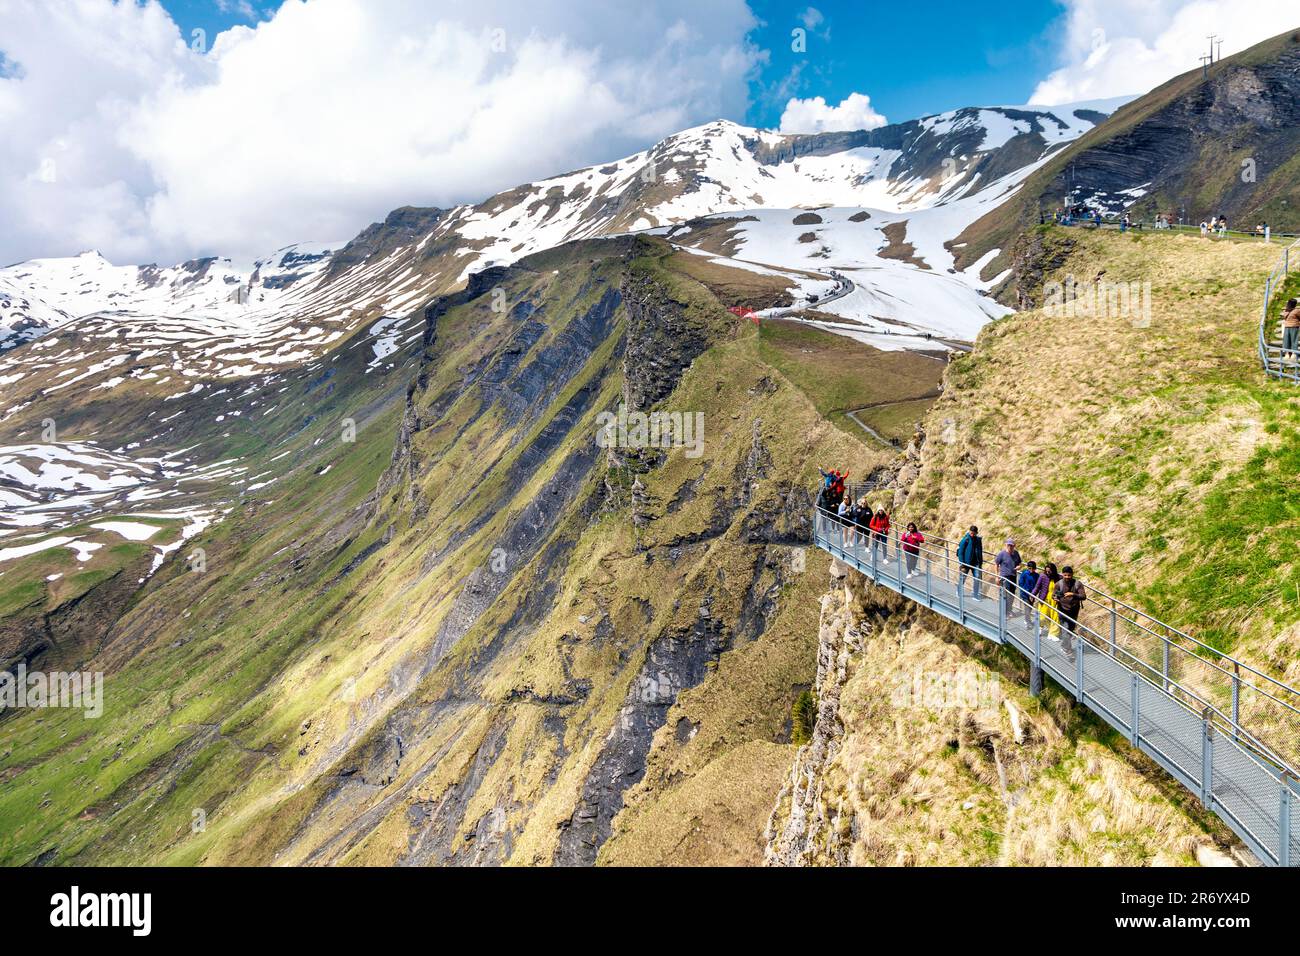 La gente caminando en el primer acantilado camina en la primera cumbre de la montaña, Suiza Foto de stock